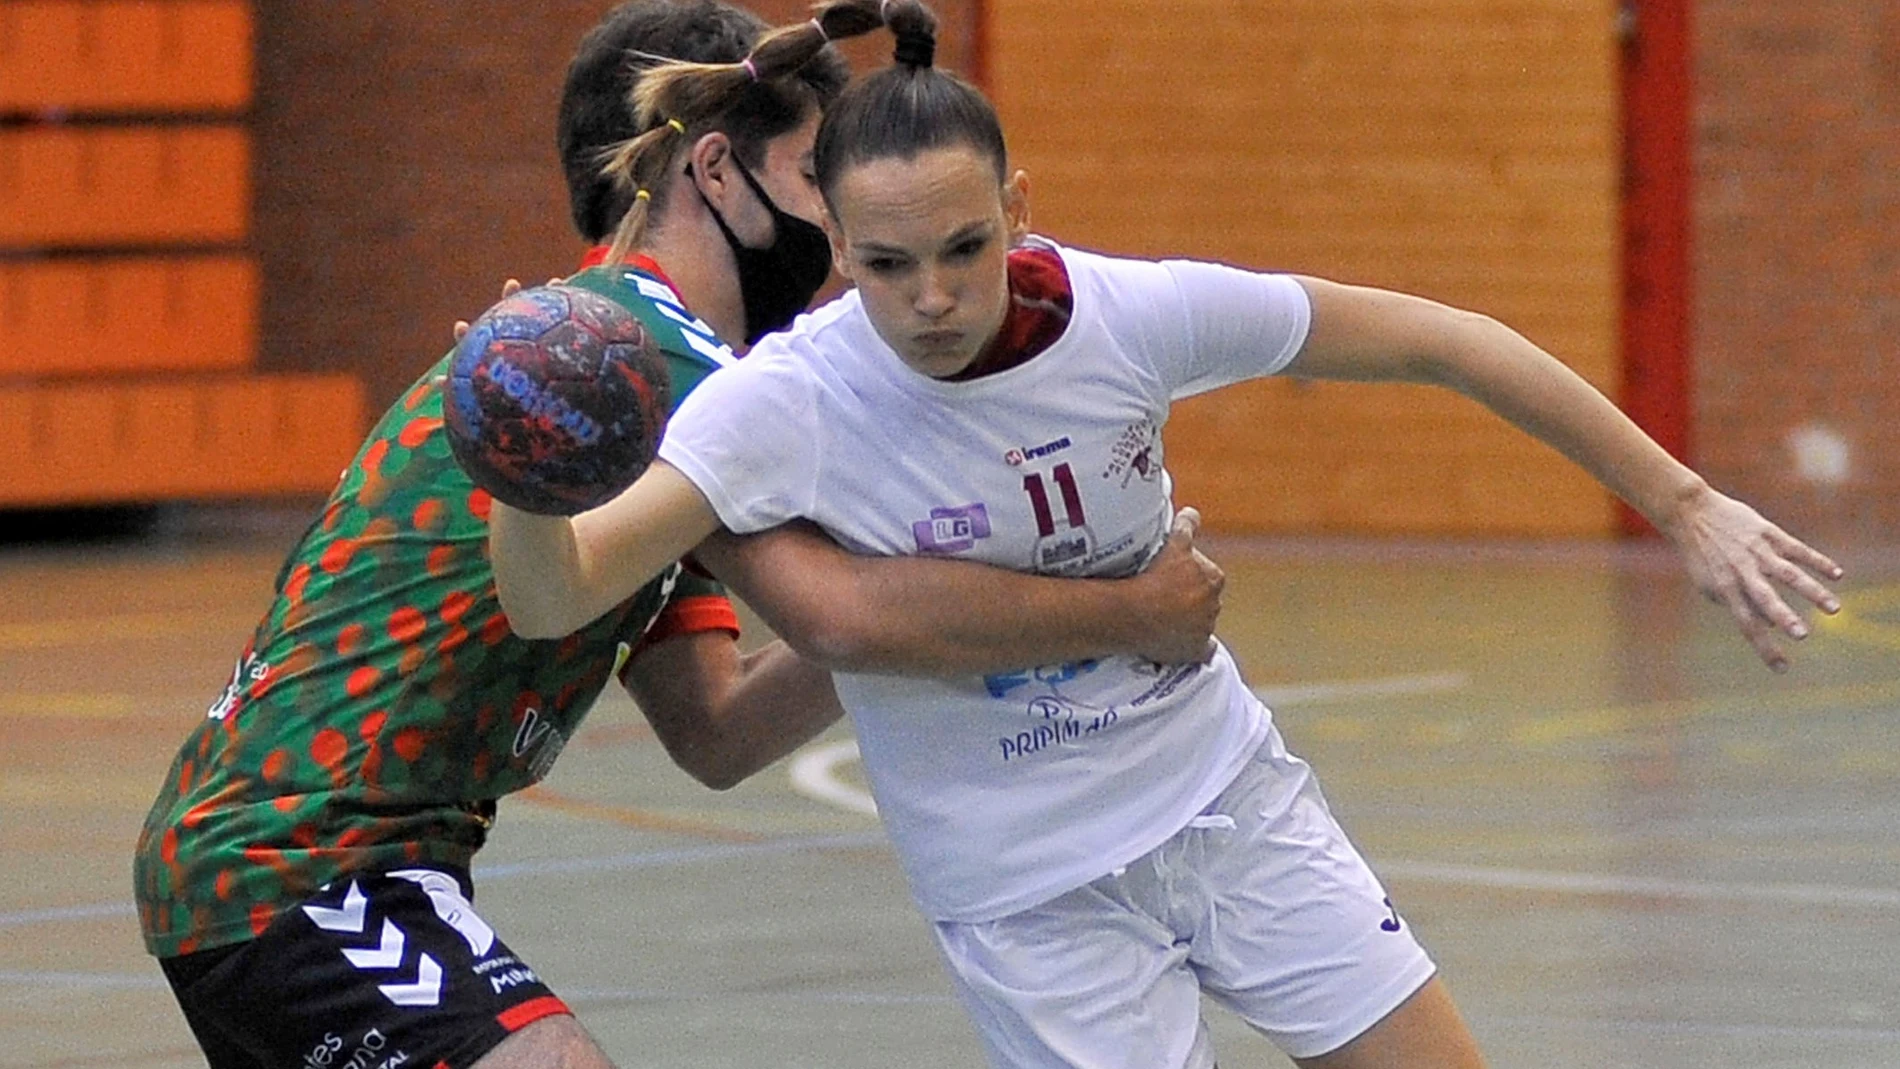 Mireia Rodríguez, jugadora del Balonmano Albacete, se ha convertido en la primera mujer en disputar un encuentro de balonmano masculino en categoría senior en España